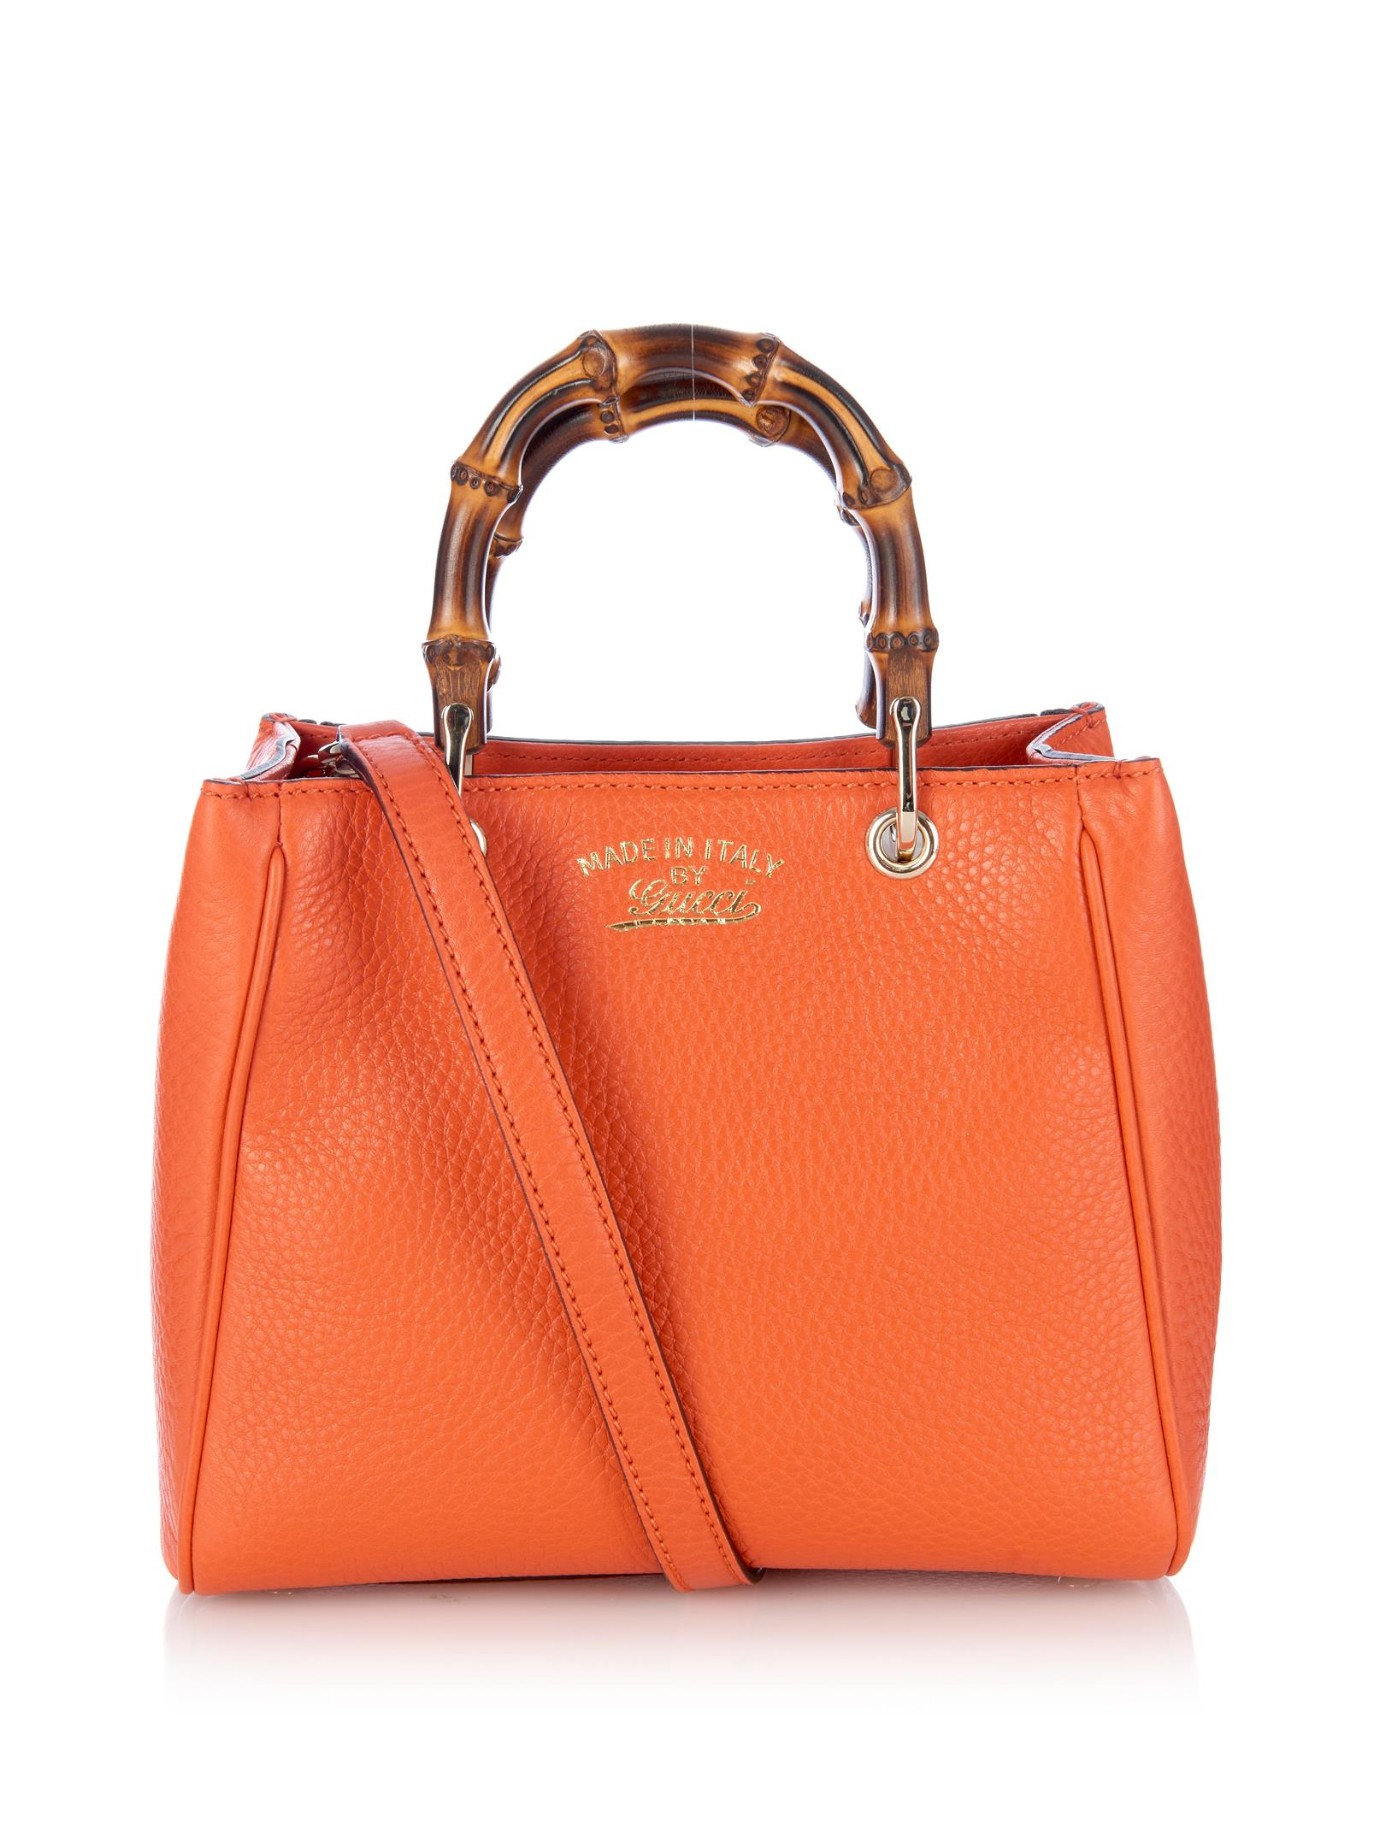 Gucci Bamboo Mini Leather Cross-body Bag in Orange - Lyst